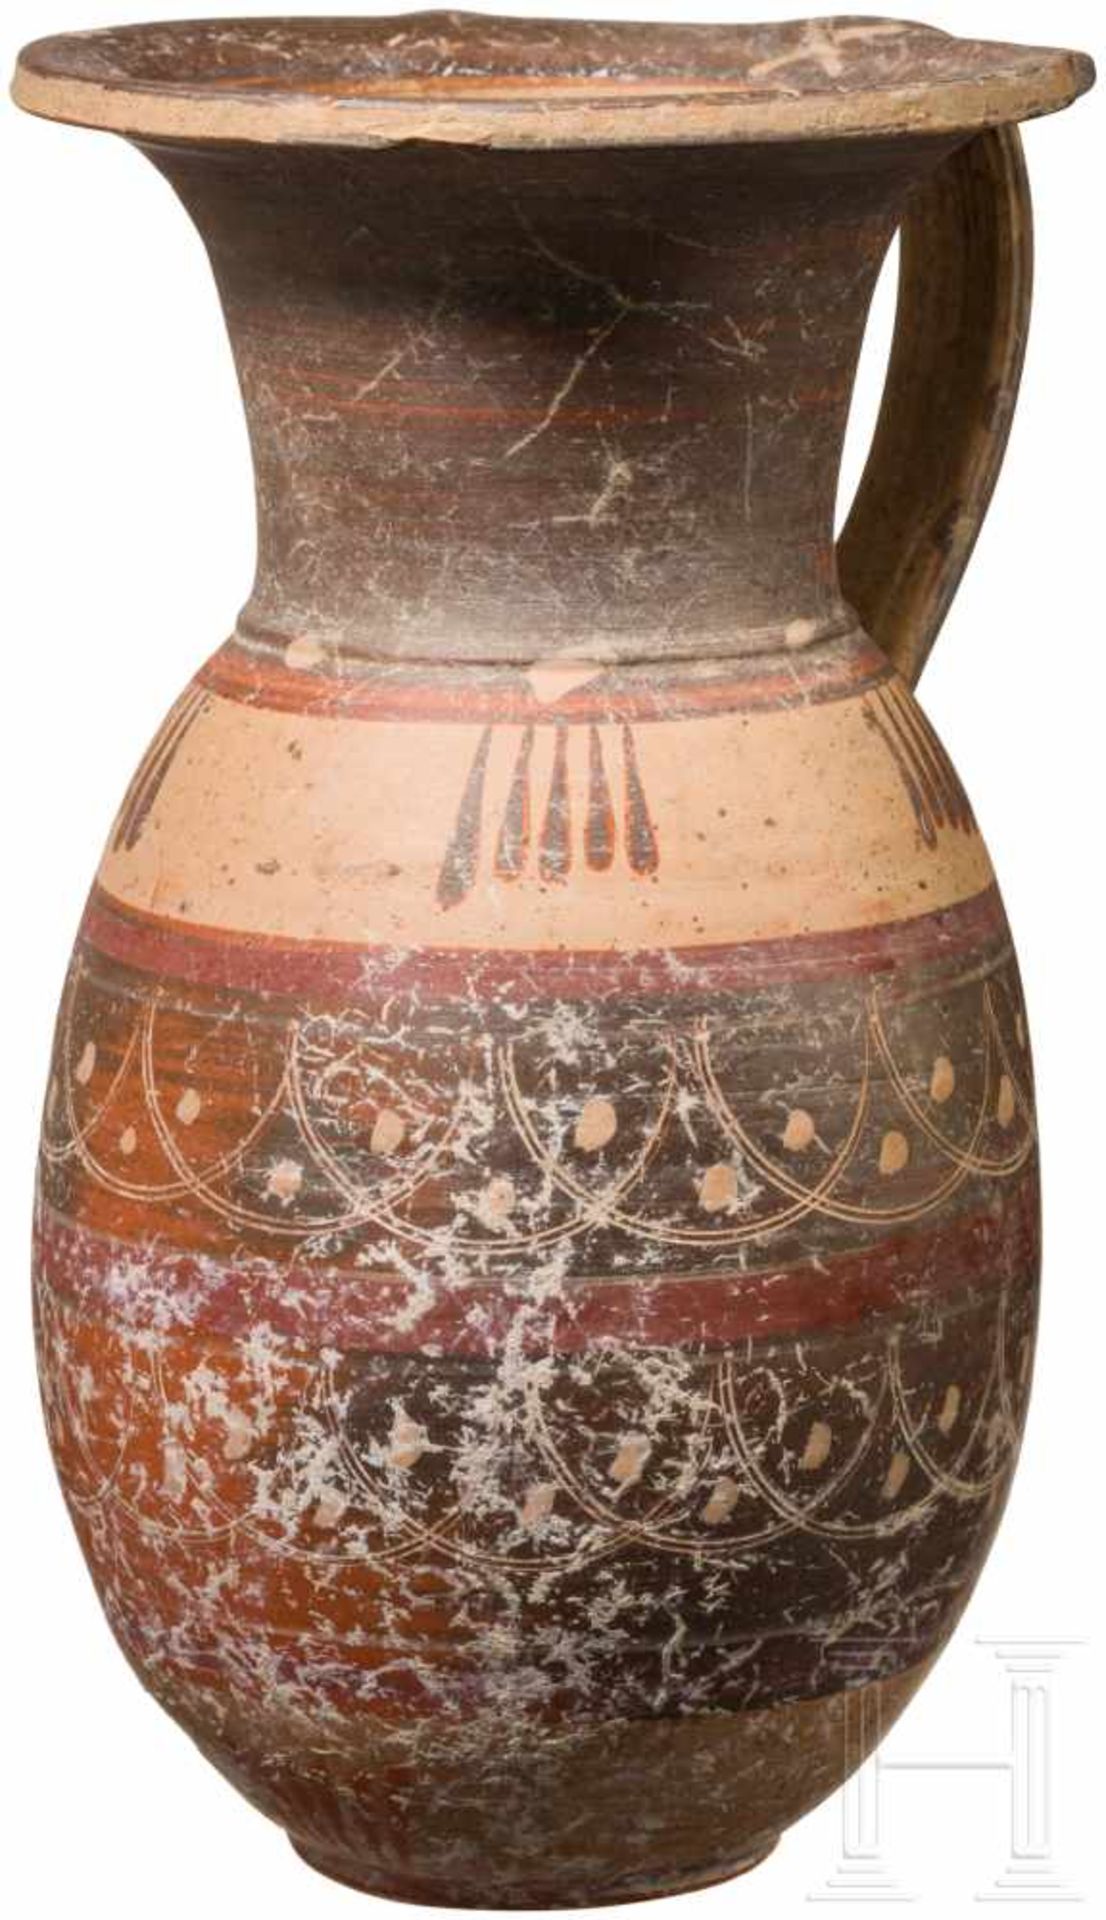 Etrusko-korinthische Kanne, spätes 7. - frühes 6. Jhdt. v. Chr.Olpe mit ausladendem Rand und